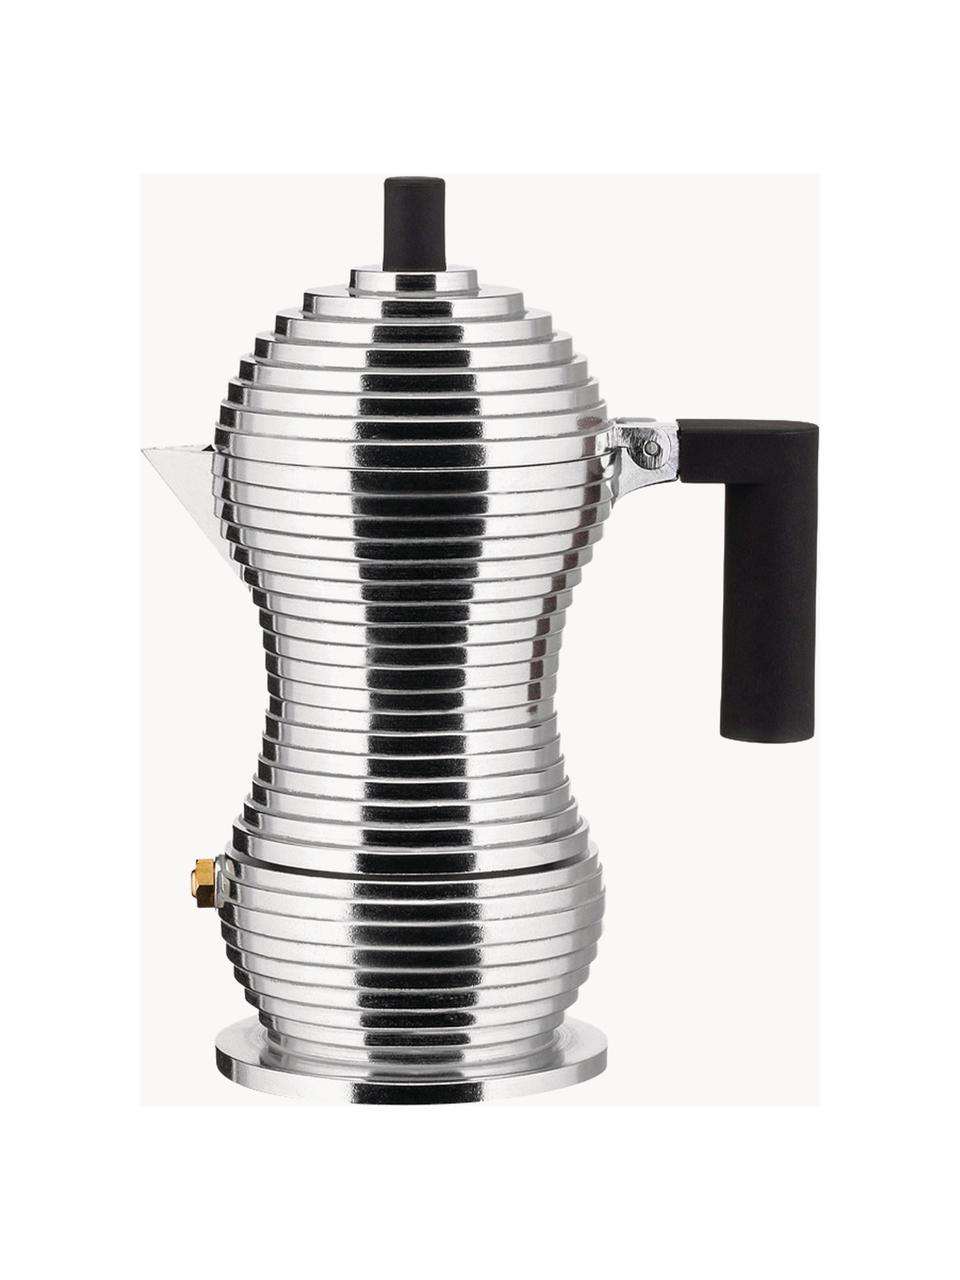 Cafetera espresso Pulcina, para 6 tazas, Recipiente: fundición de aluminio, Asa: poliamida, Plateado brillante, Ancho 13 x Alto 17 cm, para una taza